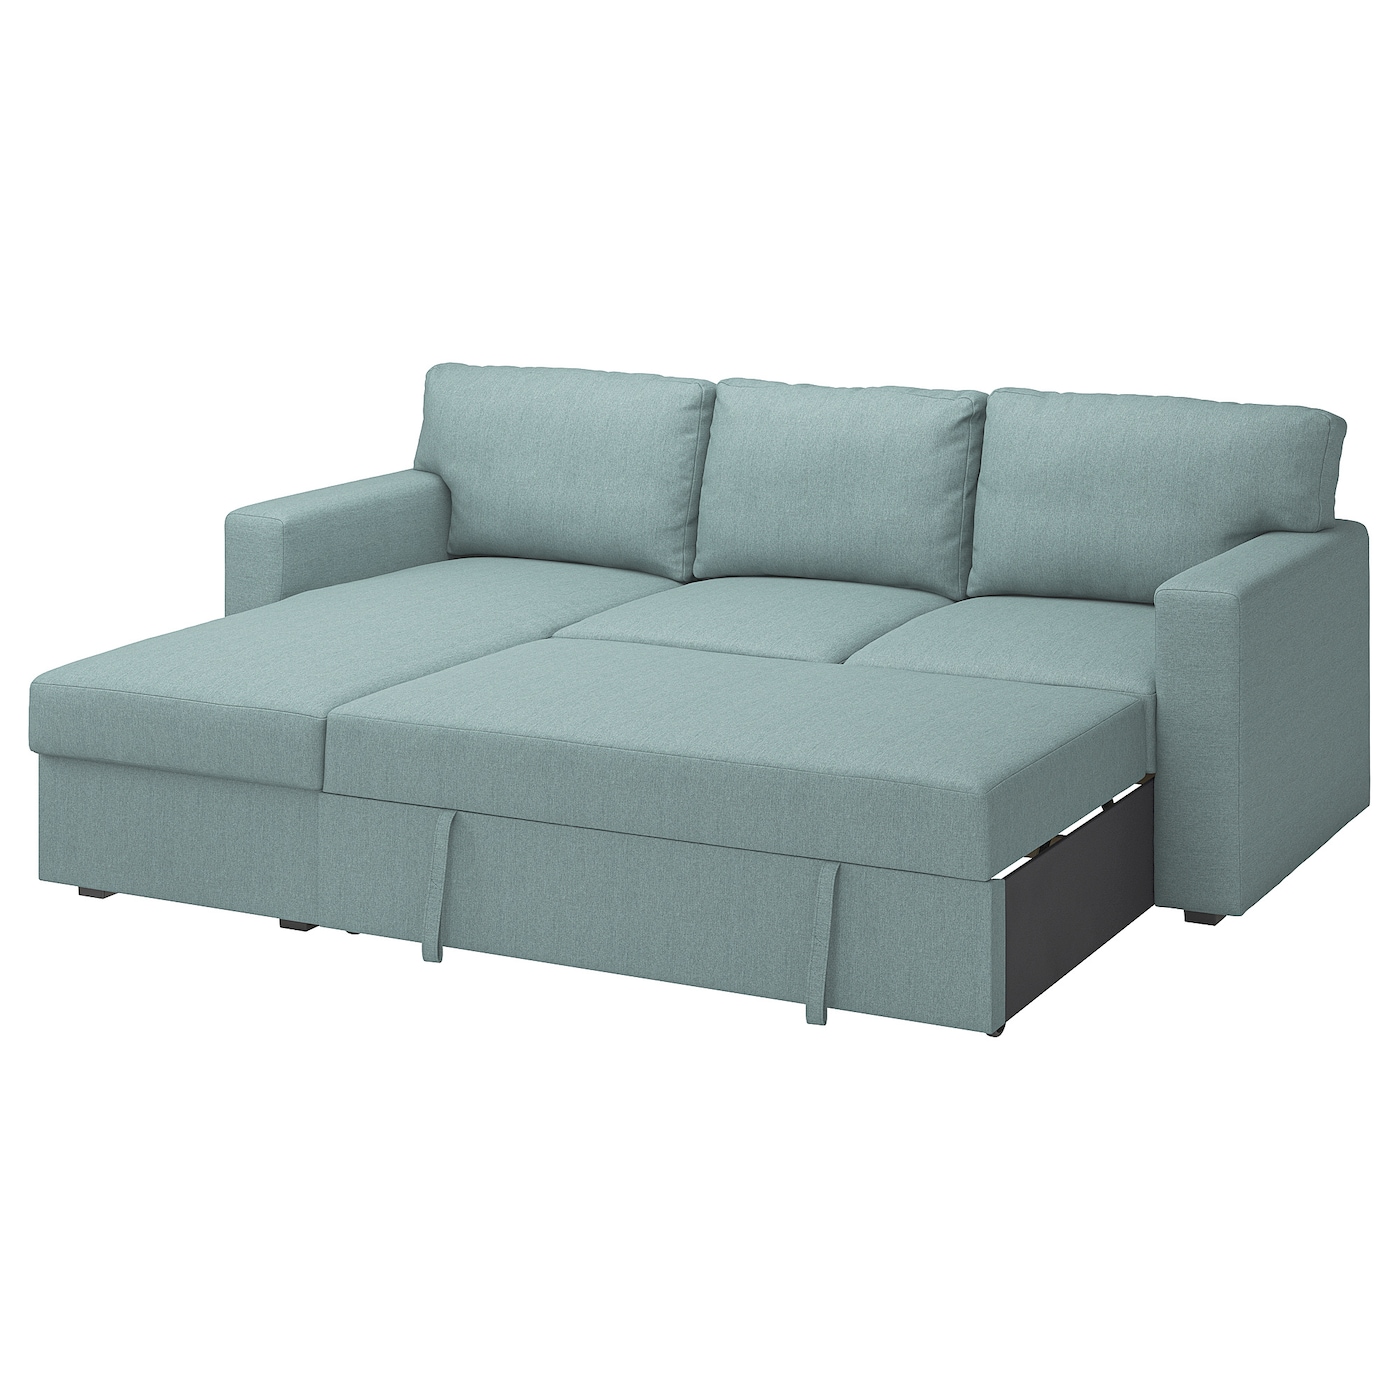 БОРСЛОВ 3-местный диван-кровать + диван, Тибблби светло-серый бирюзовый BÅRSLÖV IKEA